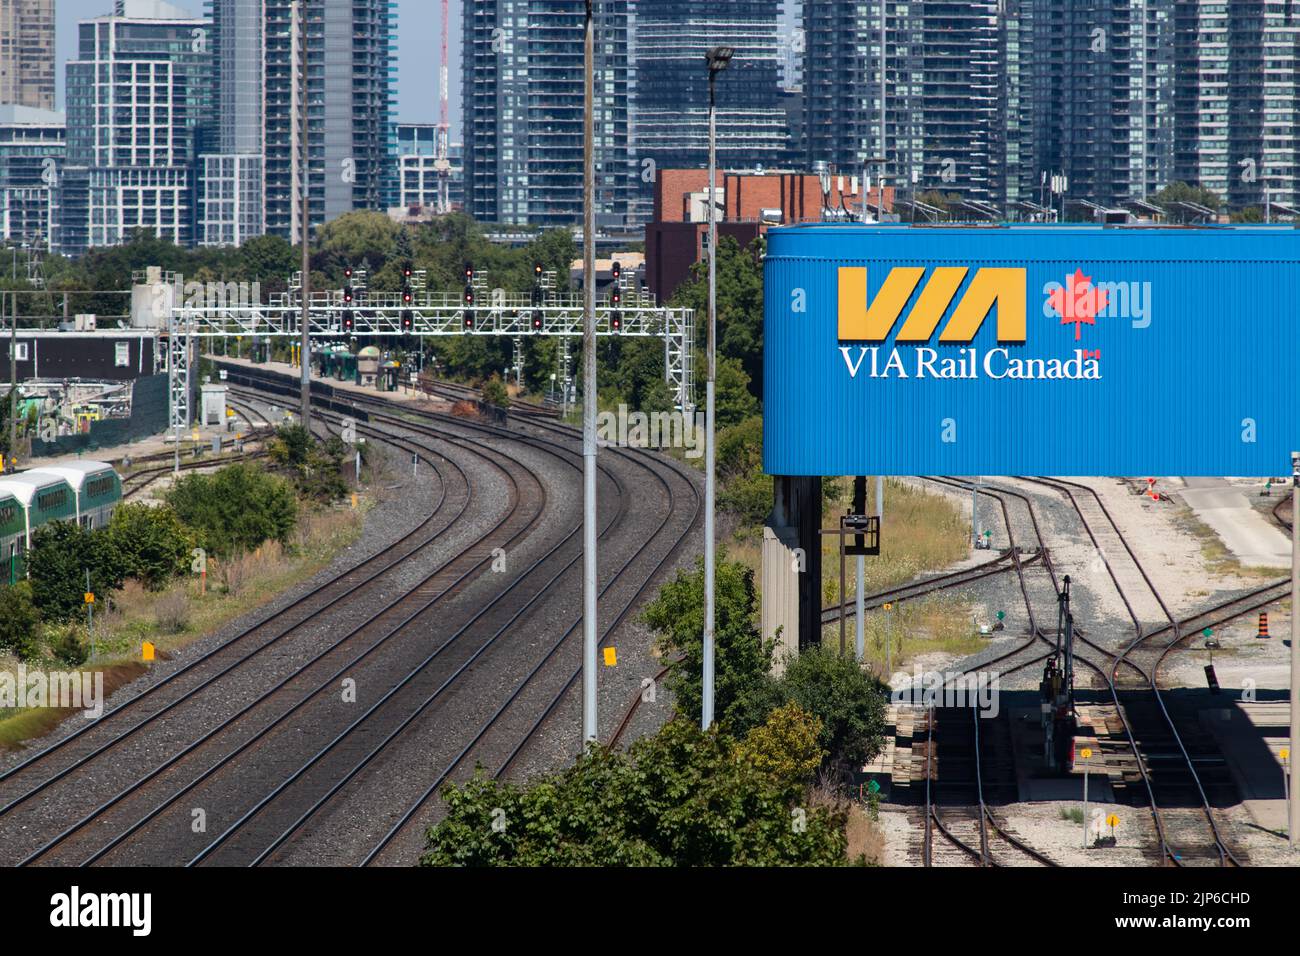 Le logo DE VIA Rail Canada est visible sur une structure dans un grand chantier ferroviaire de Toronto. Banque D'Images